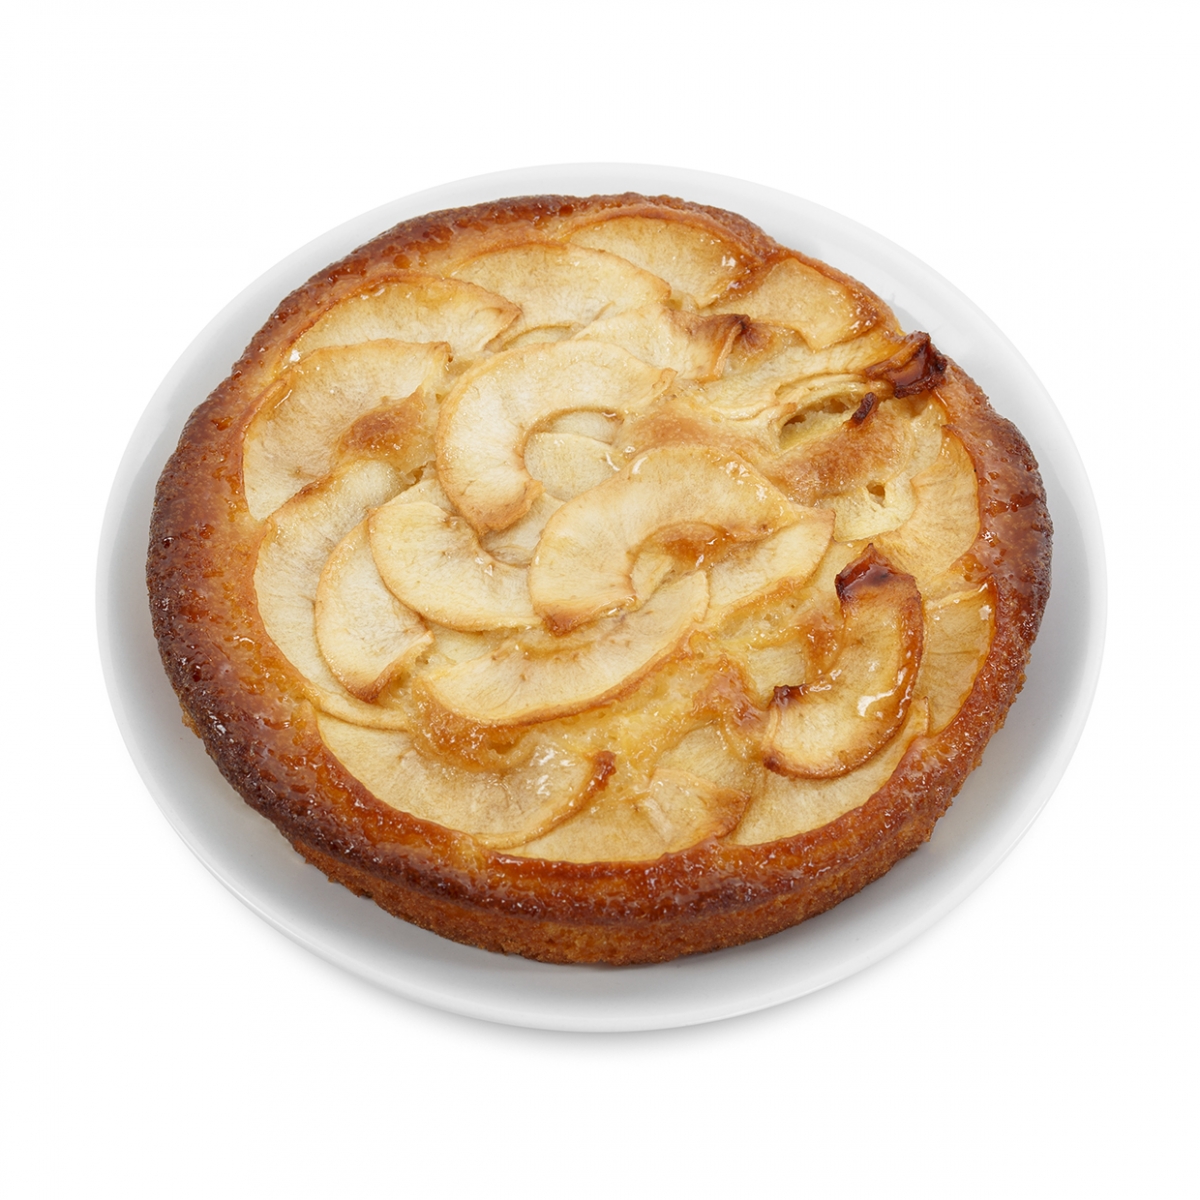 Imagen en la que se ve una tarta de manzana